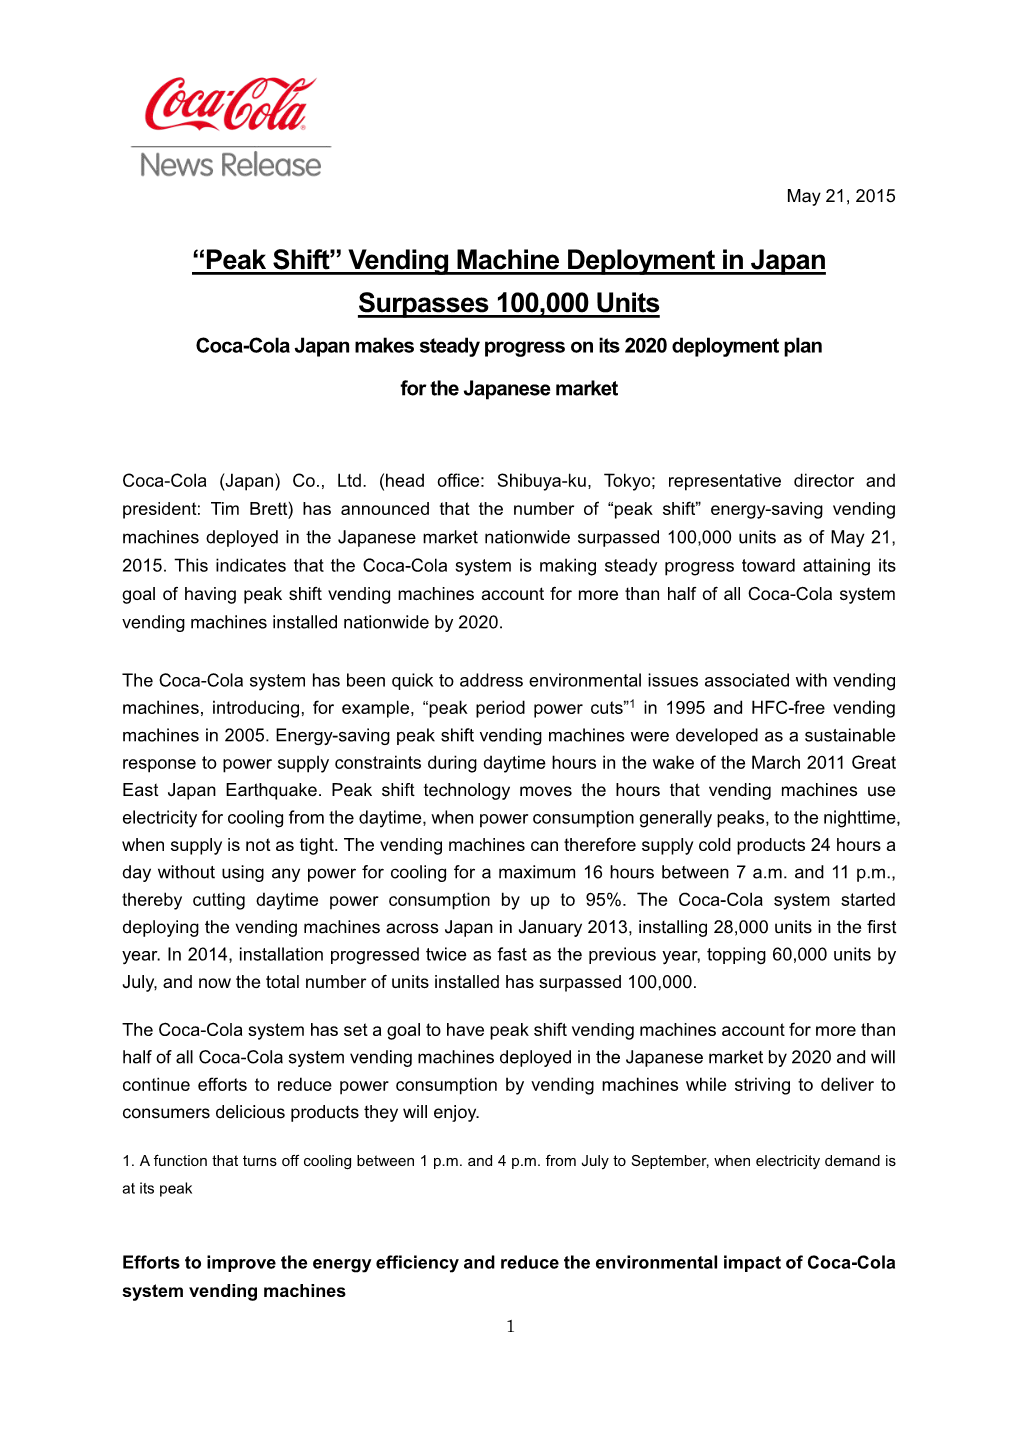 Vending Machine Deployment in Japan Surpasses 100000 Units